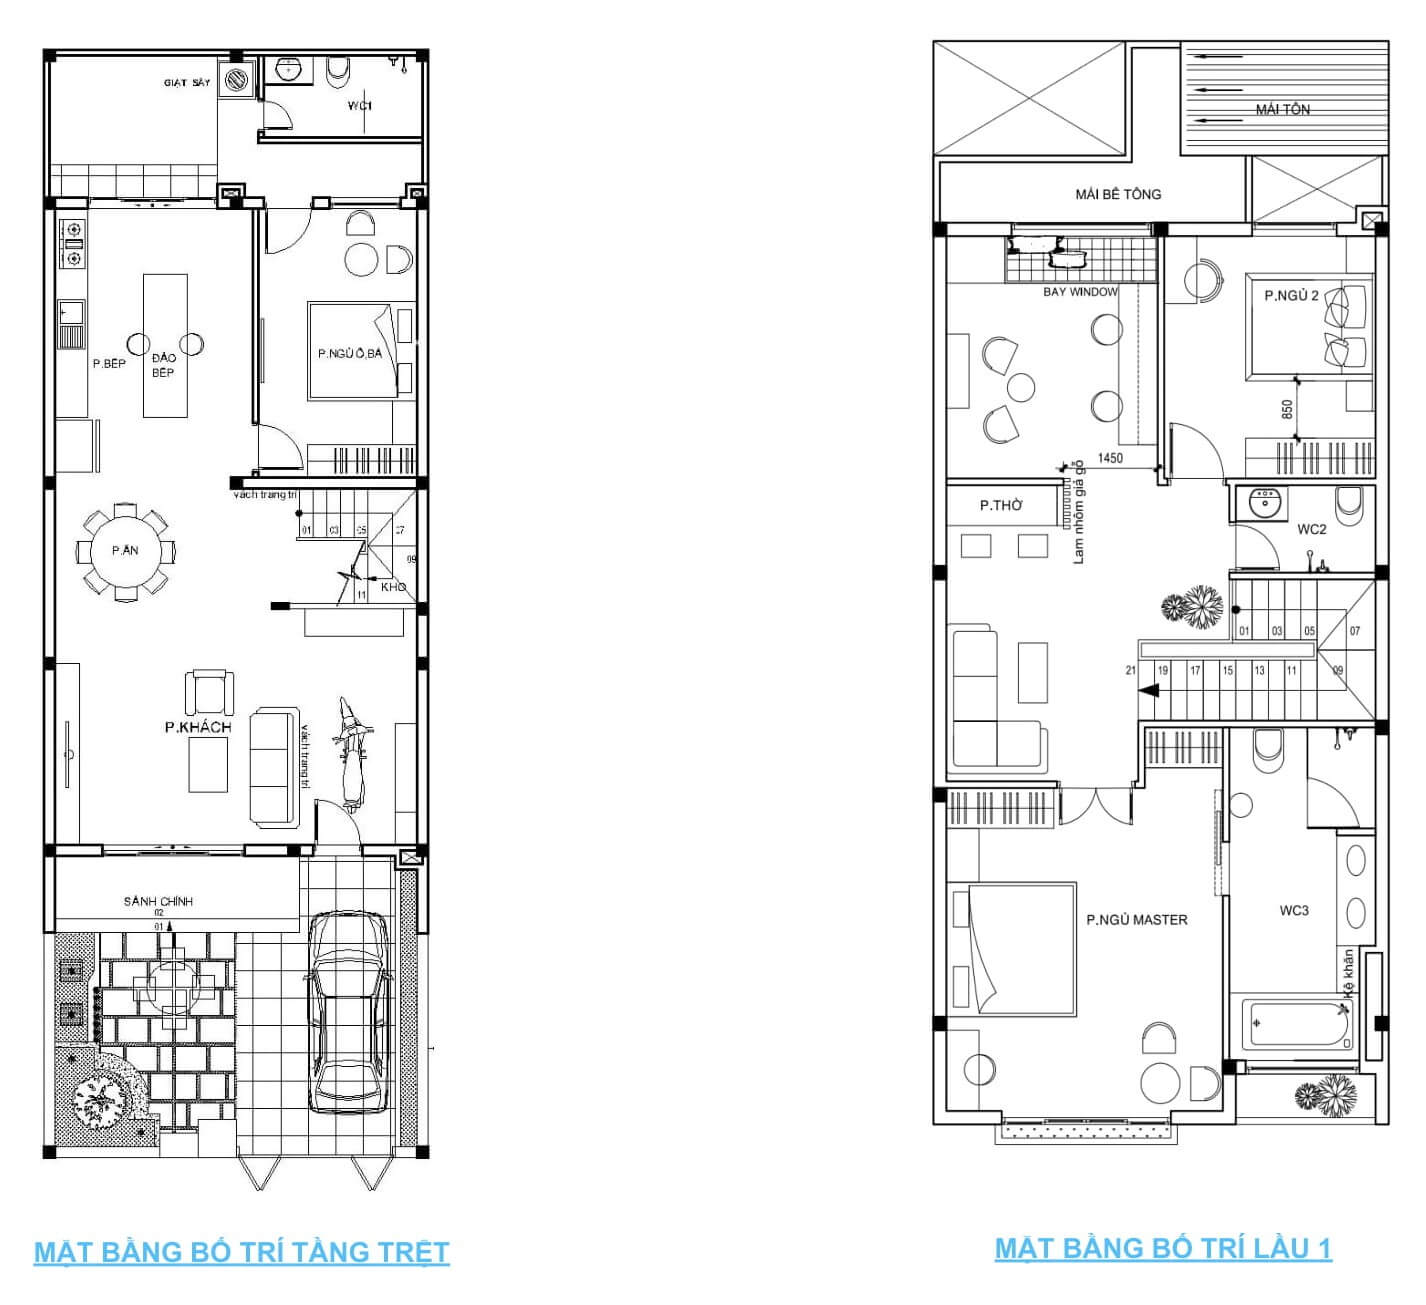 Chia sẻ ý tưởng thiết kế nội thất cho nhà phố 2 tầng đẹp trọn gói